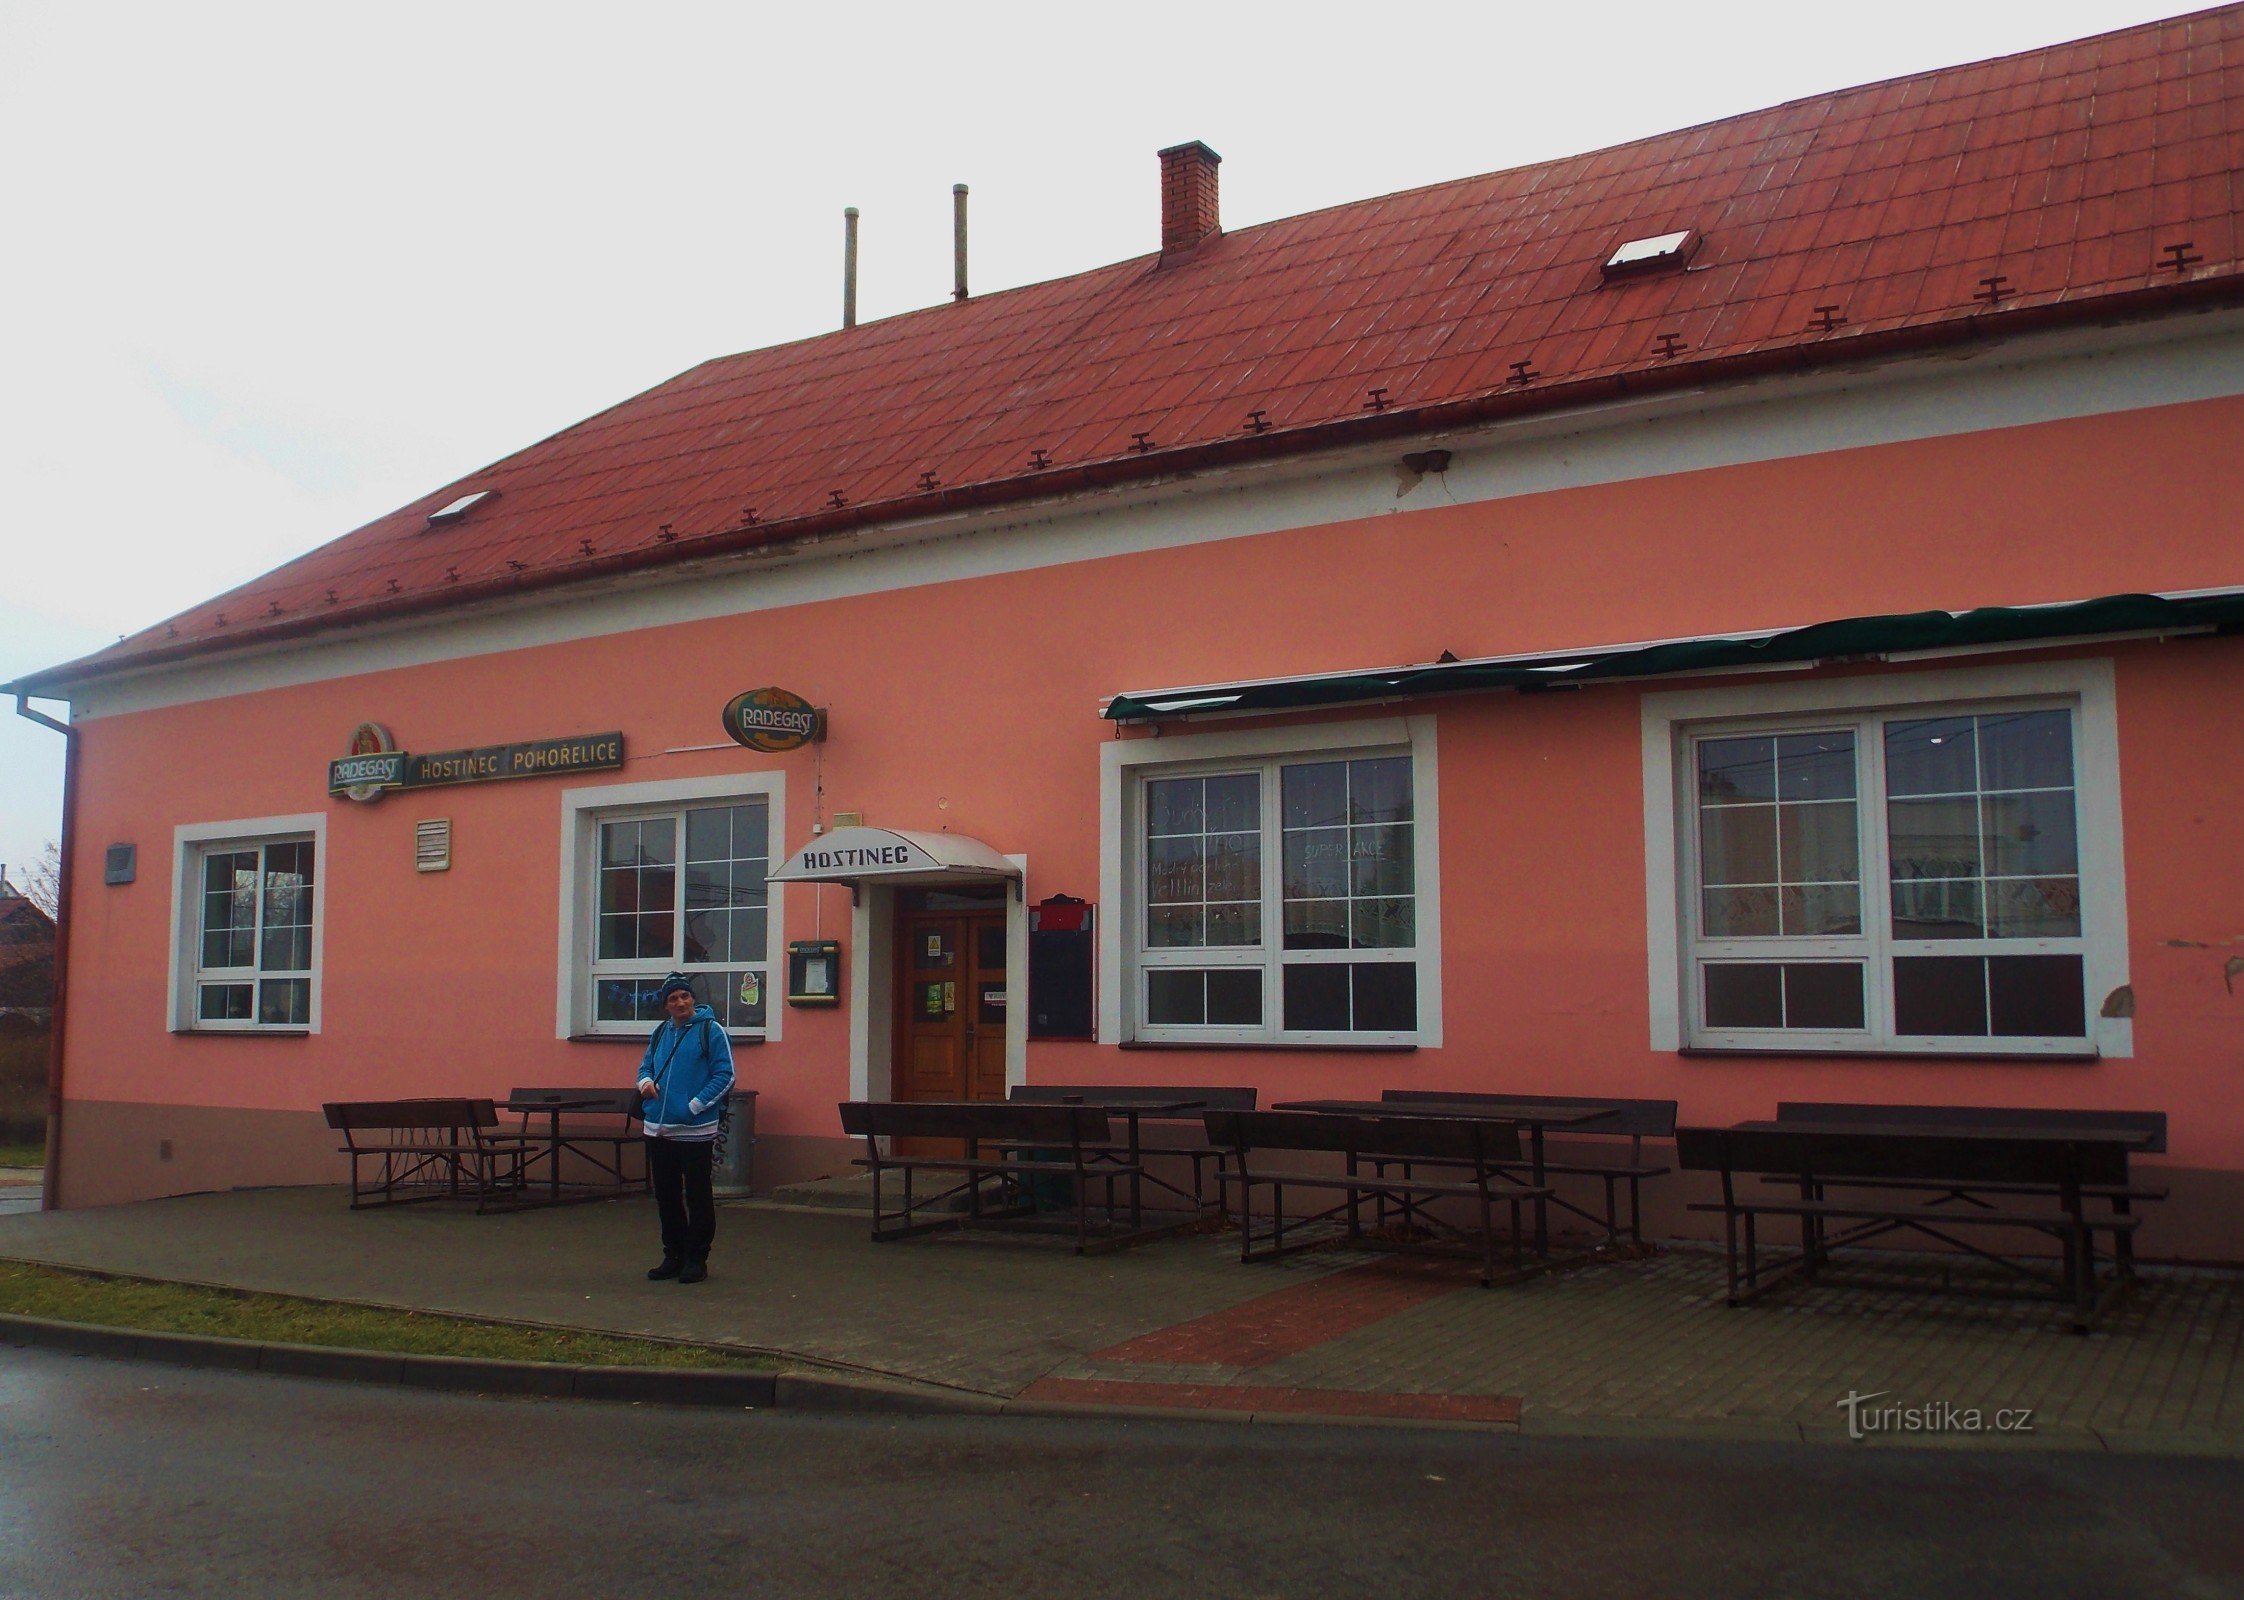 Inn in Pohořelice near Zlín